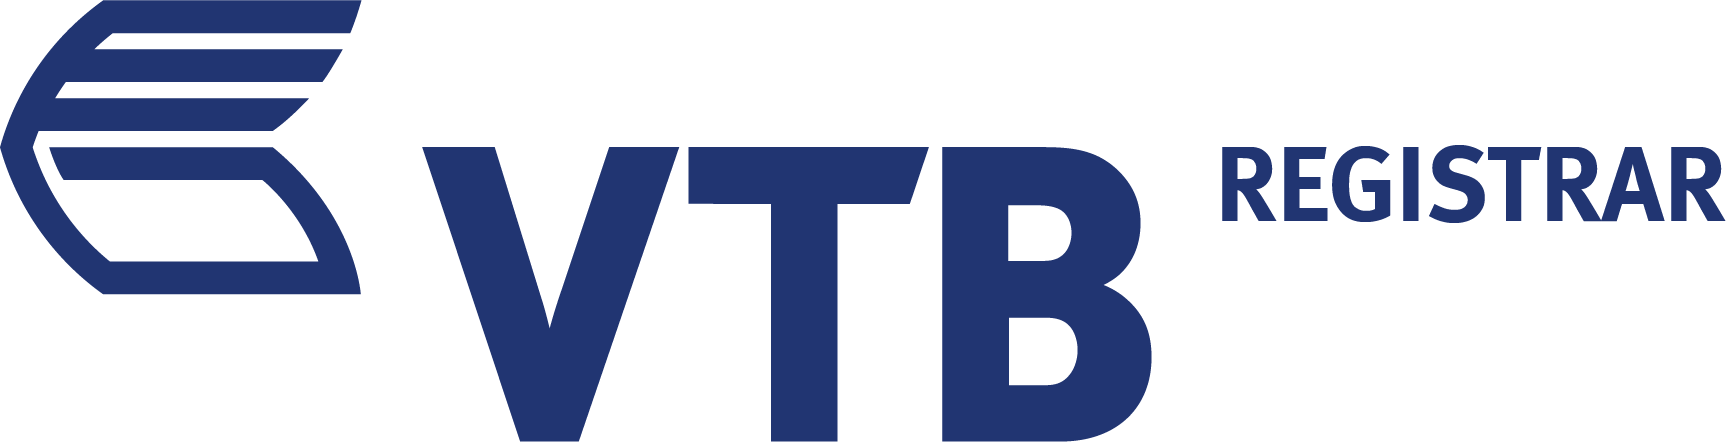 Регистраторы пао. ВТБ. ВТБ логотип. ВТБ регистратор логотип. ВТБ лизинг логотип.